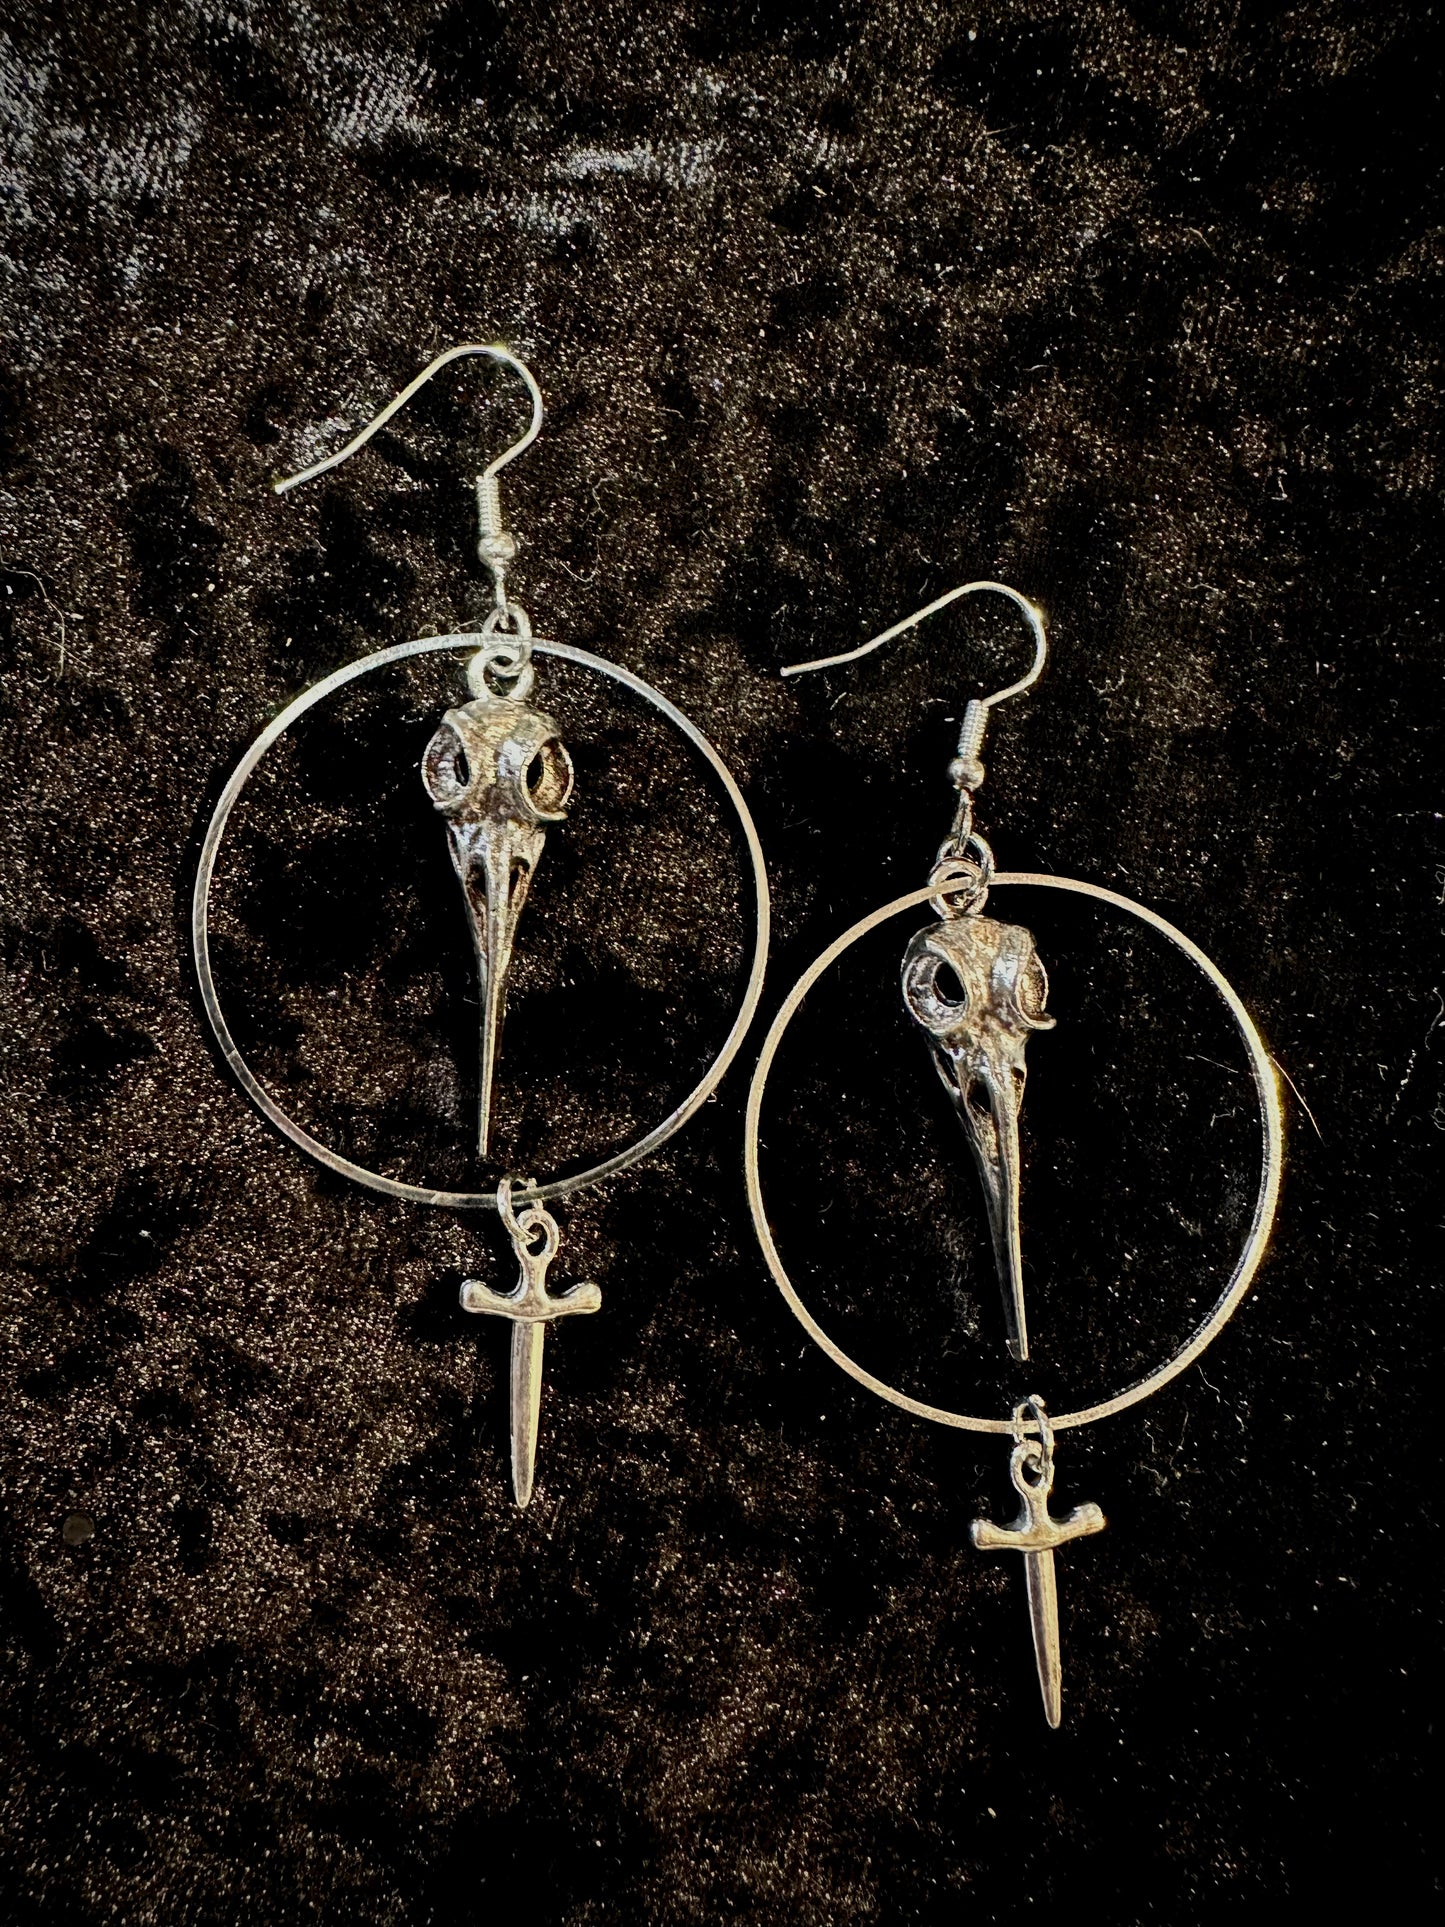 Crow & sword earrings